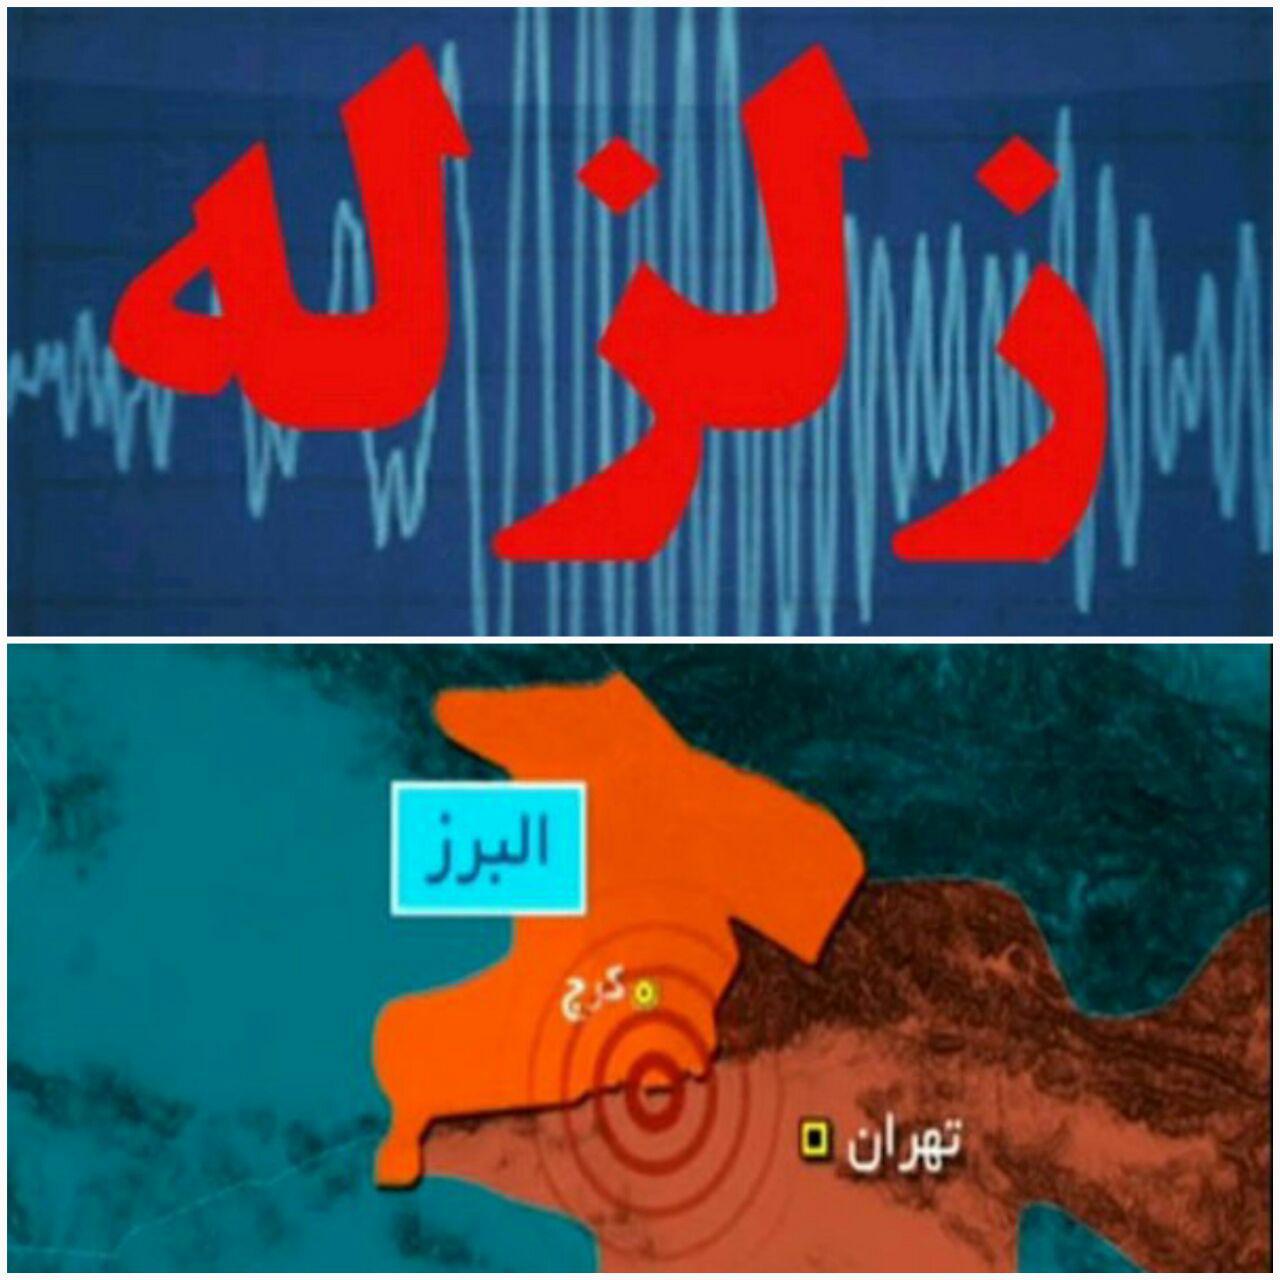 زلزله ۴.۲ ریشتری البرز 75 مصدوم و یک کشته برجای گذاشت/ 22 نفر در مراکز درمانی حضور دارند/ آدرس مراکز اسکان موقت شهروندان کرجی اعلام شد